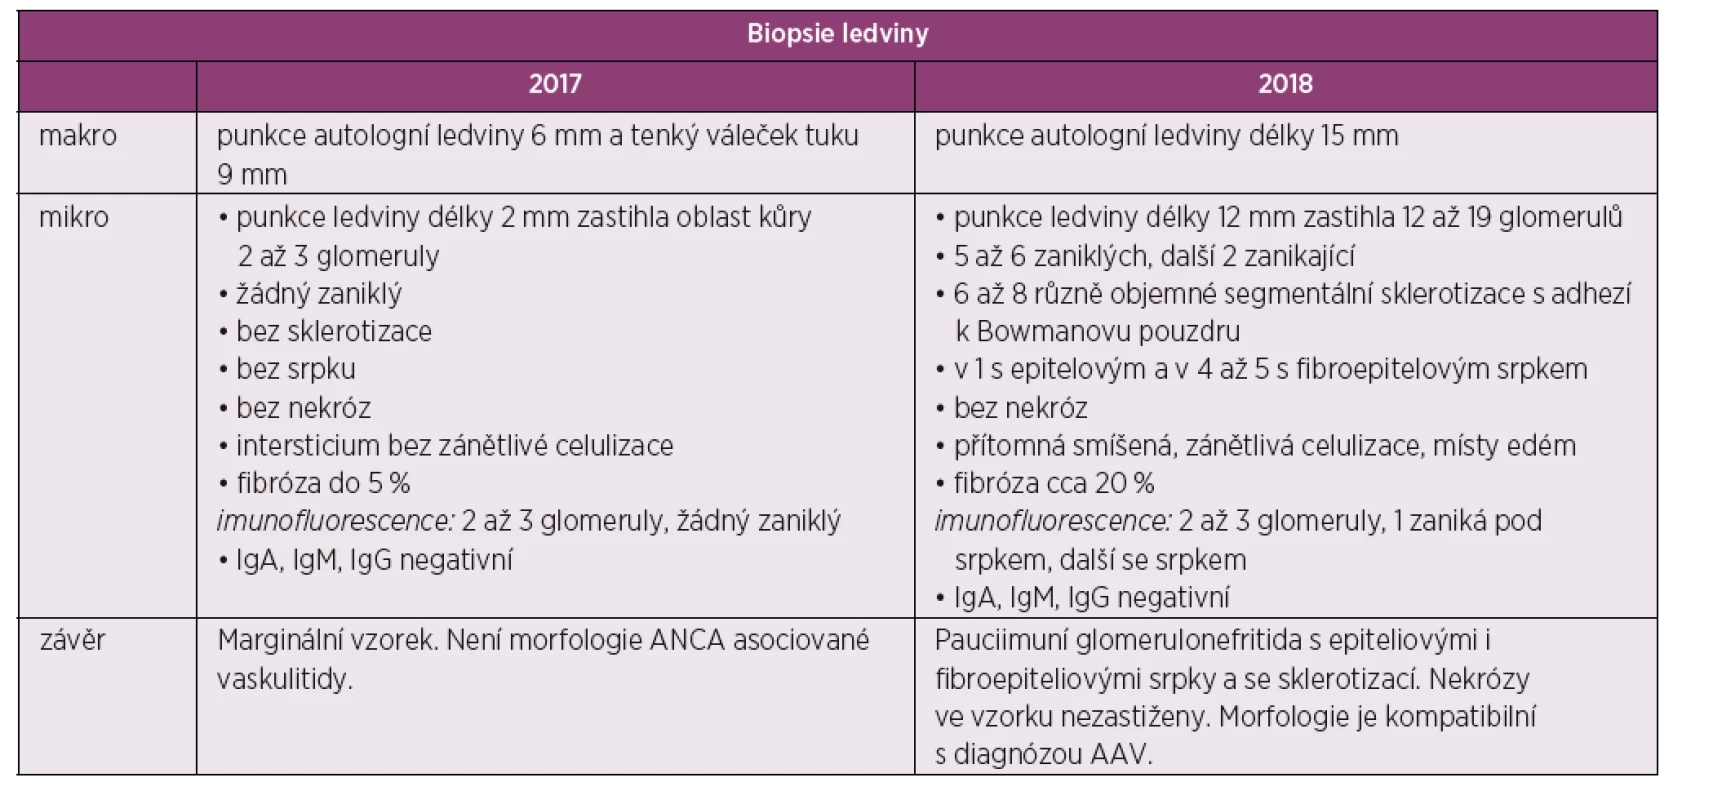 Tabelární znázorněni výsledků biopsie ledvin